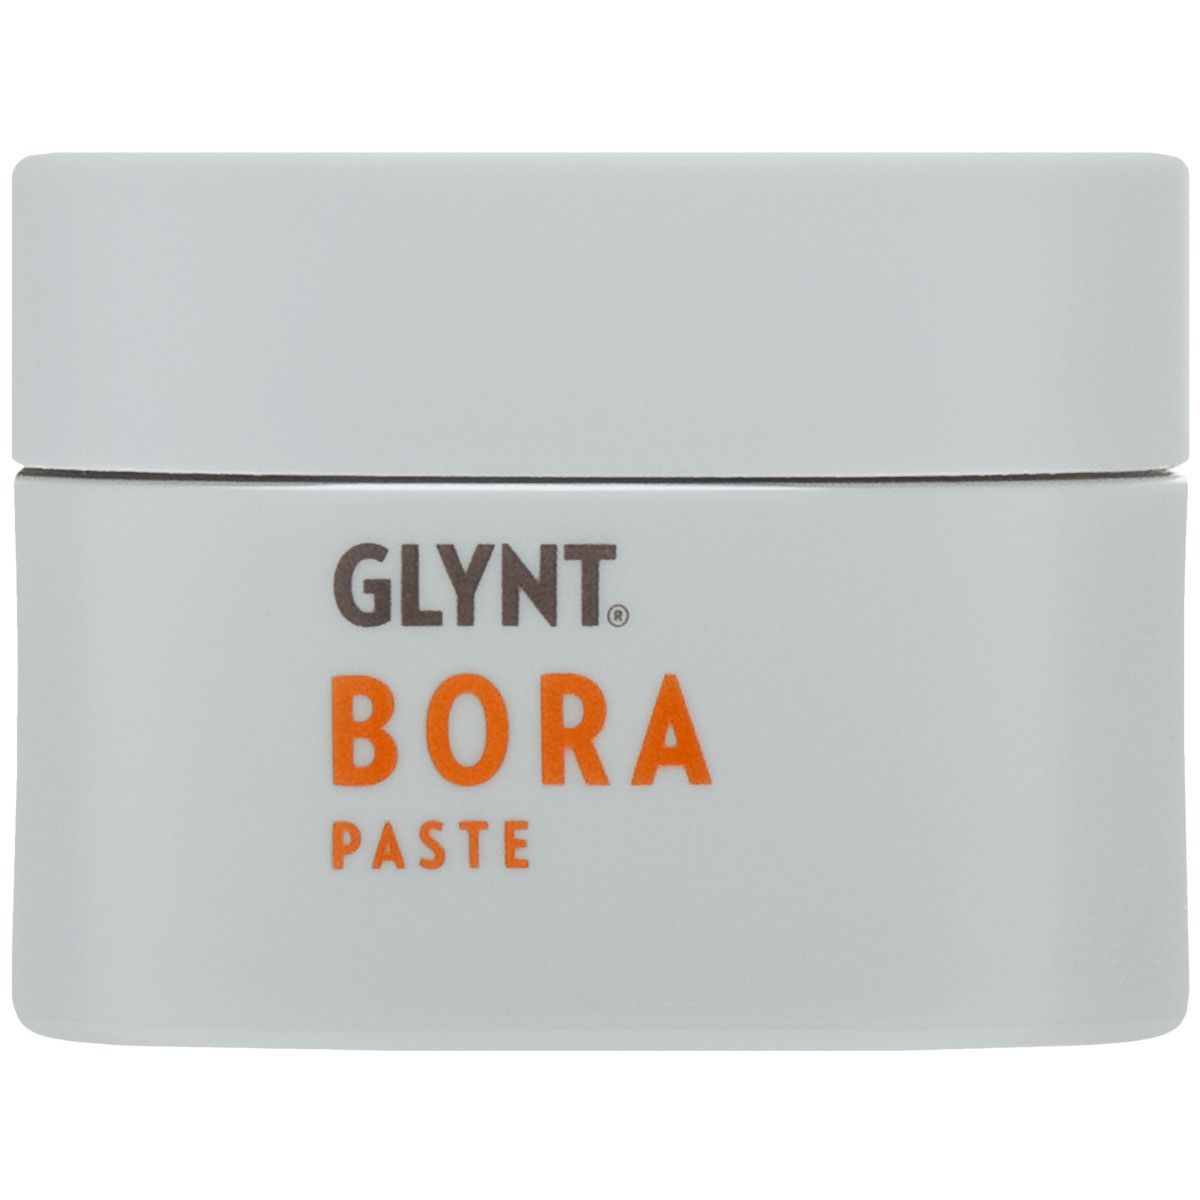 Glynt Bora Paste - pasta teksturyzująca do stylizacji włosów, 75ml